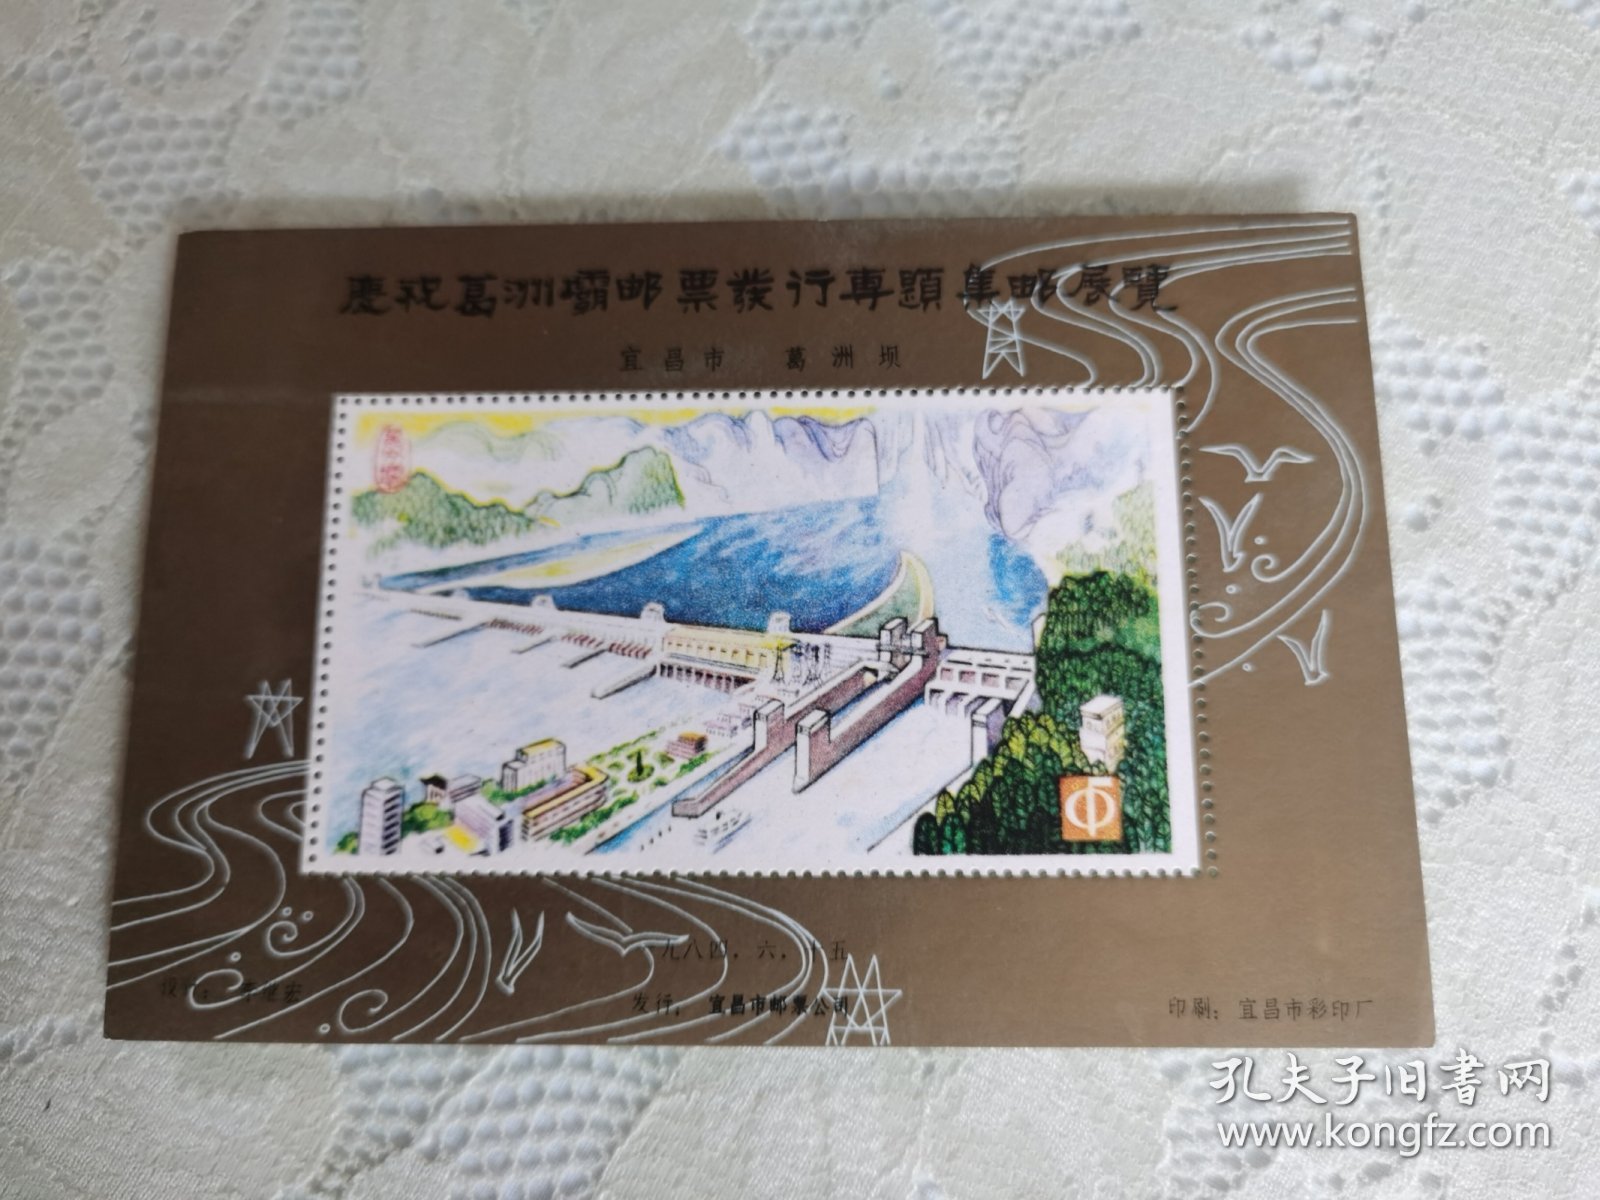 庆祝葛洲坝邮票发行专题集邮展览 纪念张